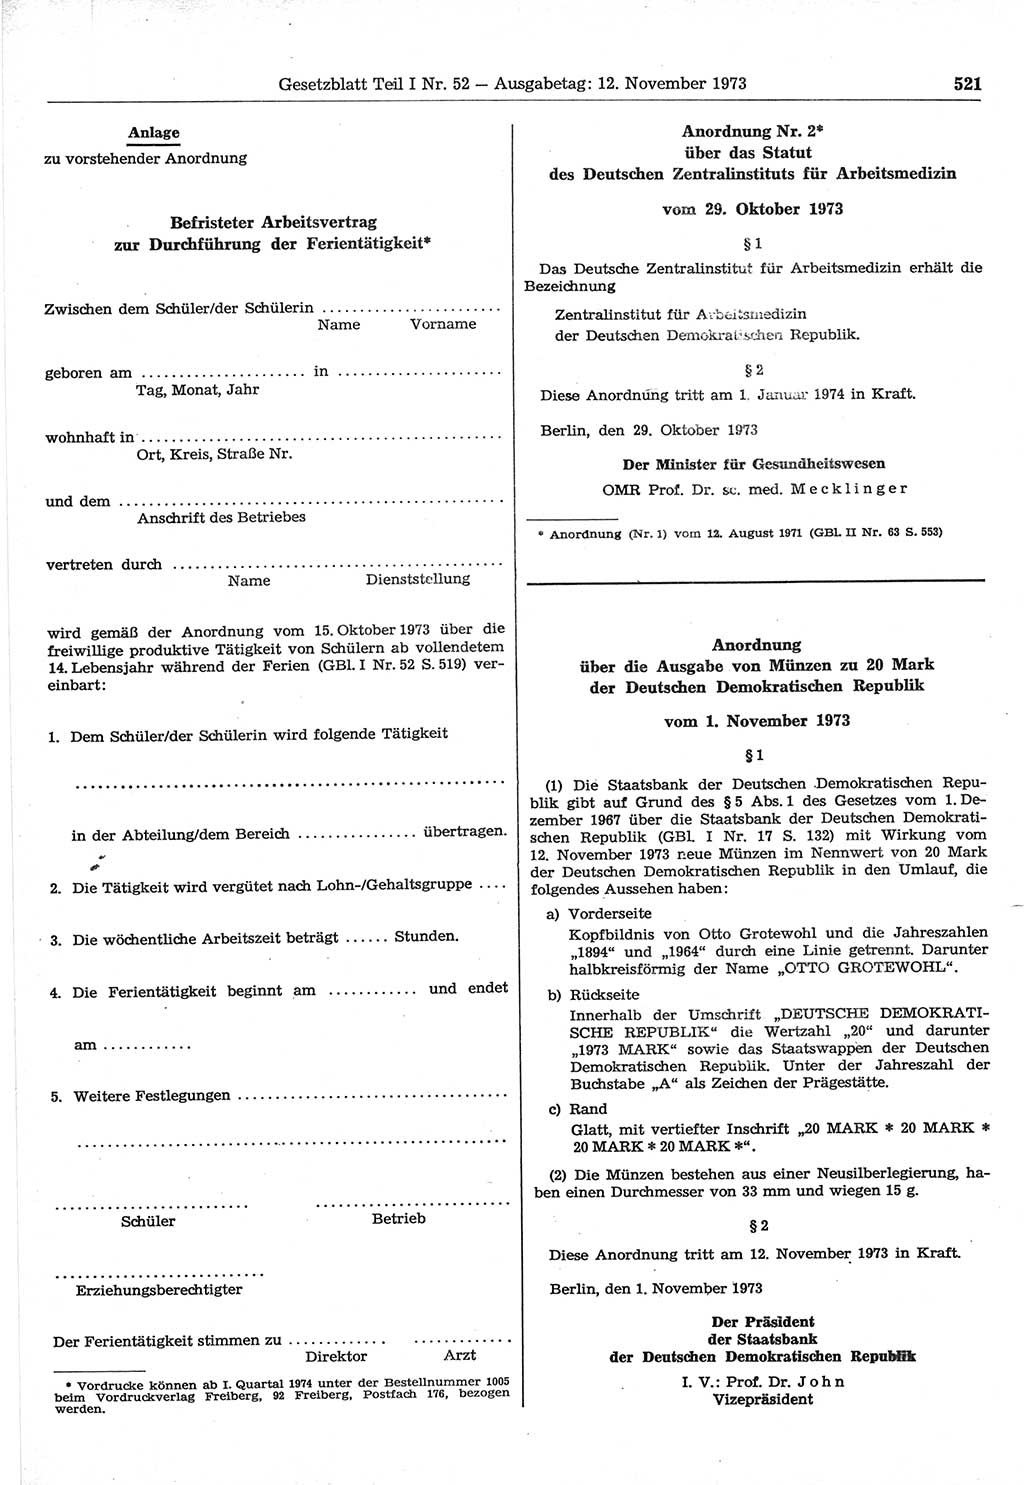 Gesetzblatt (GBl.) der Deutschen Demokratischen Republik (DDR) Teil Ⅰ 1973, Seite 521 (GBl. DDR Ⅰ 1973, S. 521)